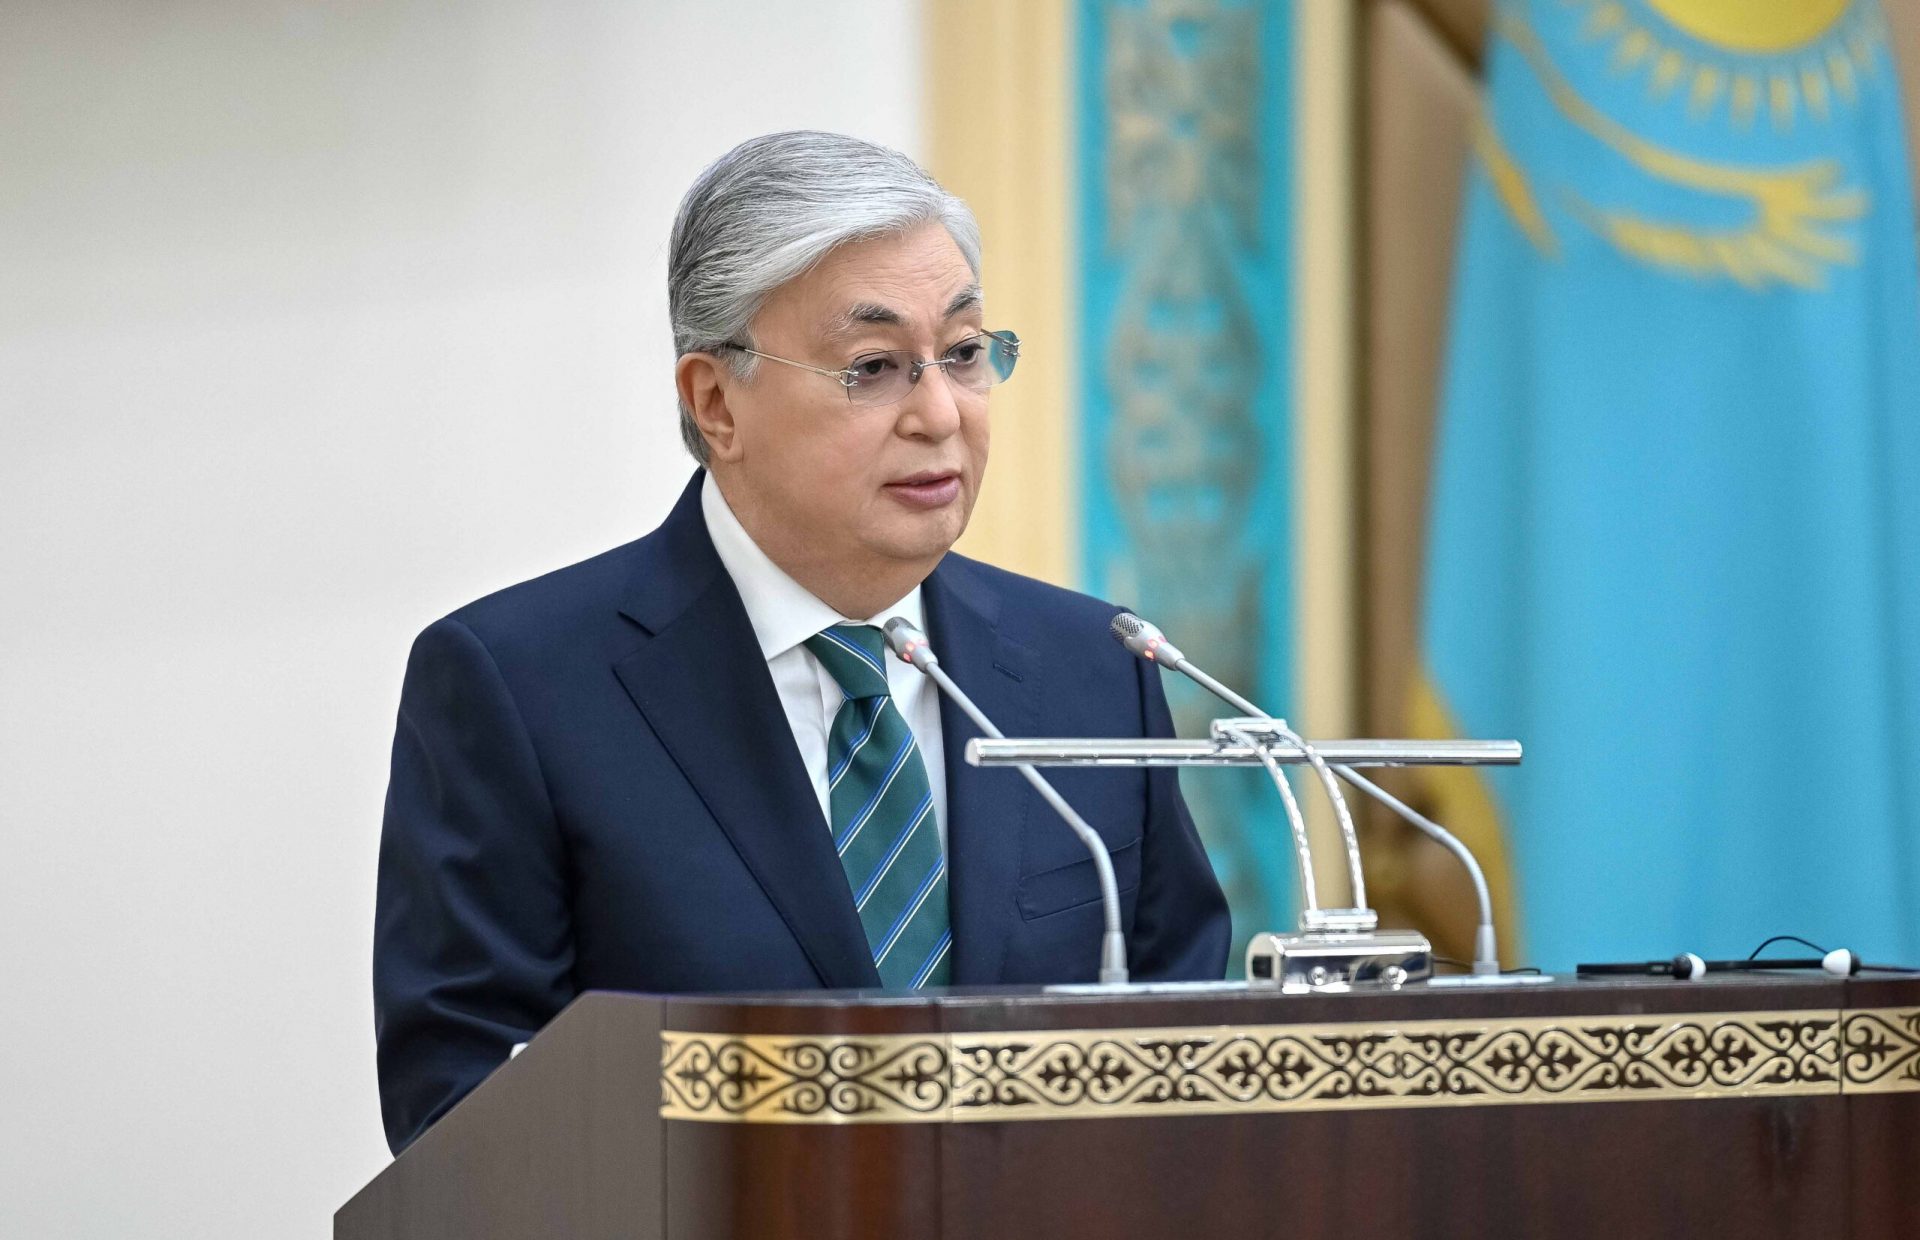 Казахстан переходит к системе президентского государства с сильным парламентом, говорит президент Токаев